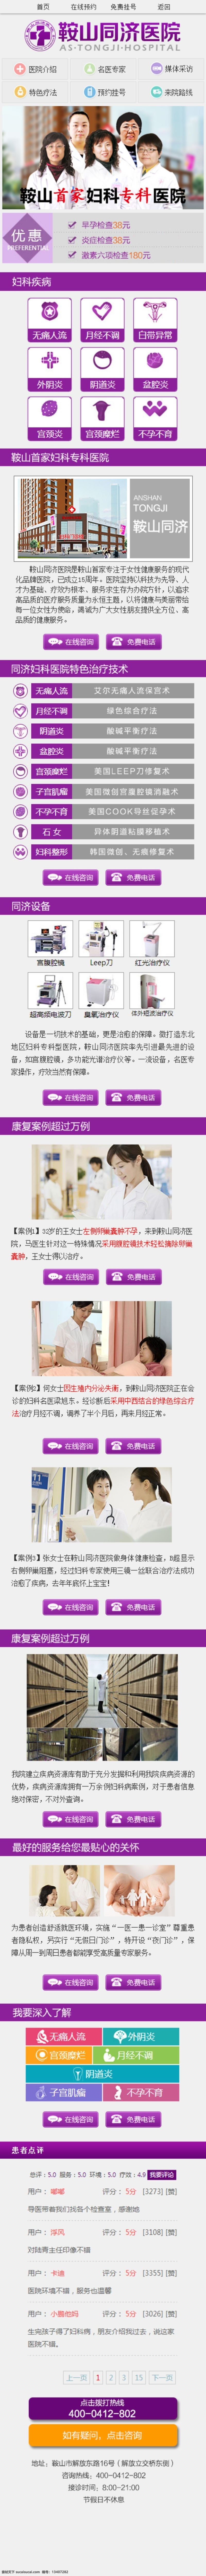 妇科 医院 网站 专题 介绍 妇科医院 网站专题 医院介绍 白色